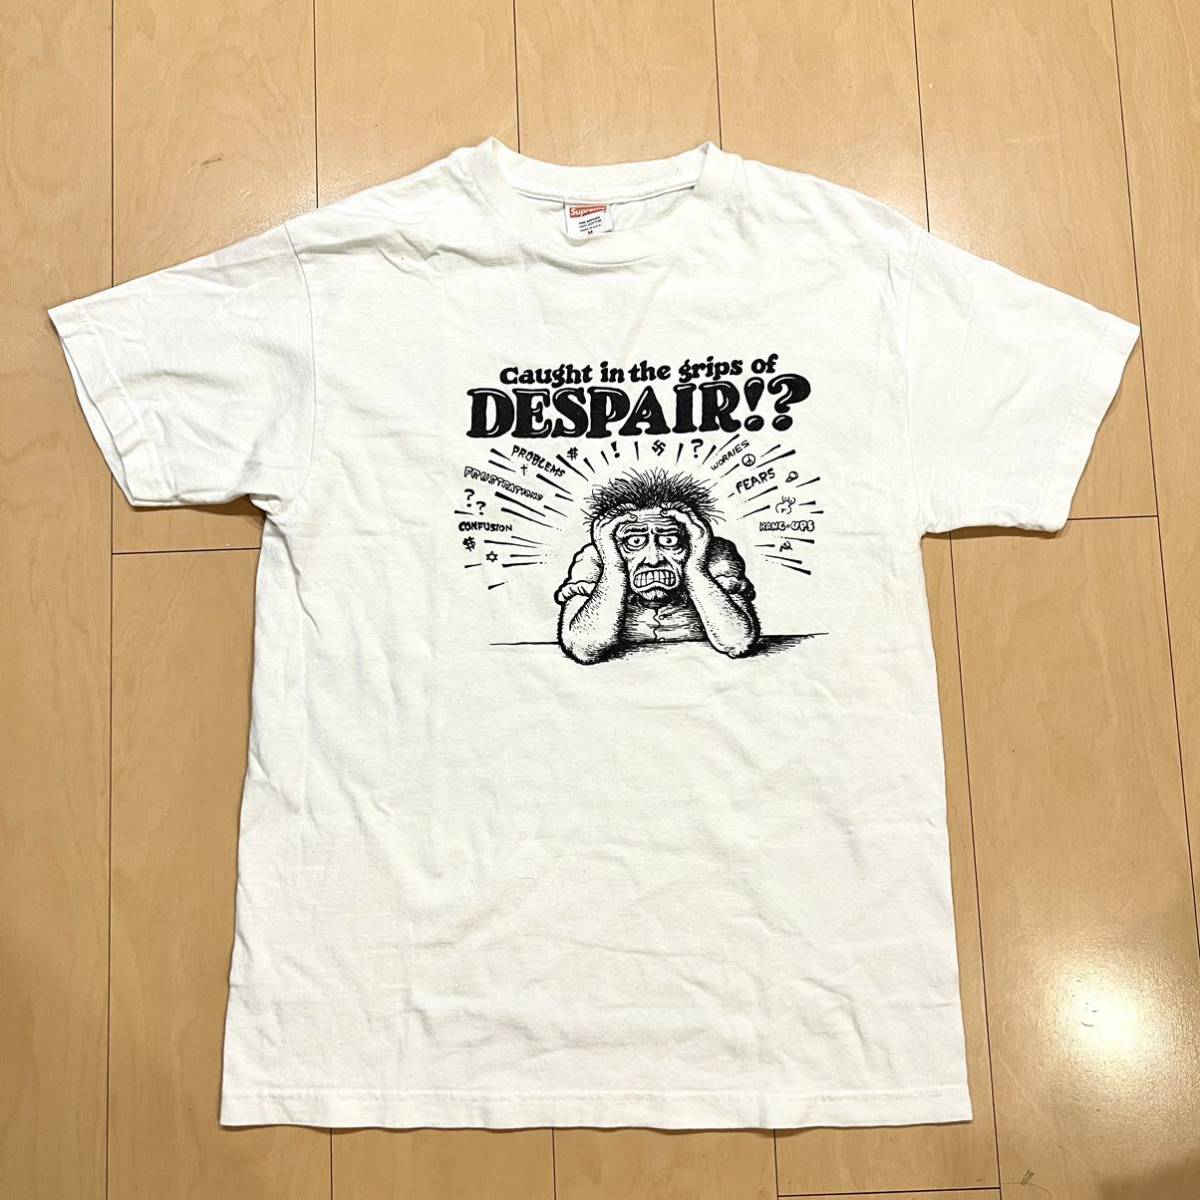 春のコレクション 90年代ビンテージ 激レア! SUPREME×ロバート・クラム 美品格安! サイズM Tシャツ DESPAIR Mサイズ